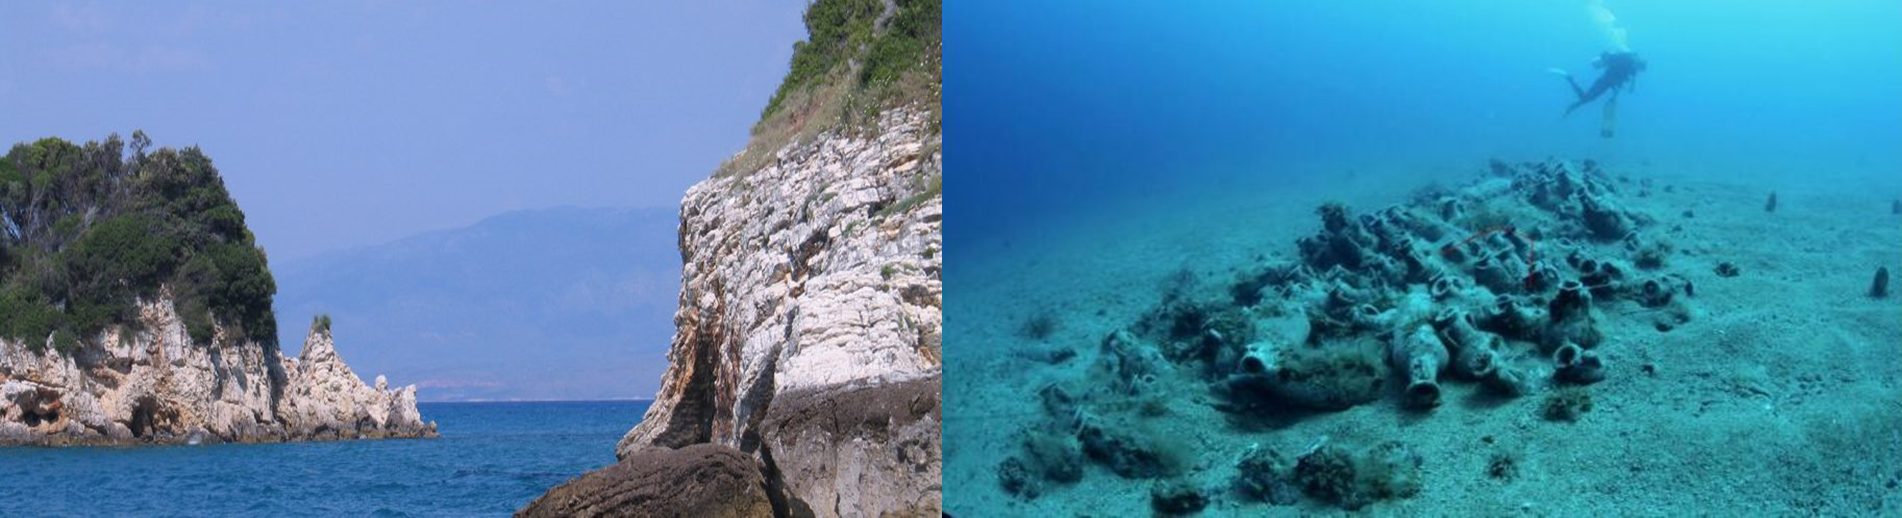 Në detin Jon gjenden 22 amfora 2500-vjeçare